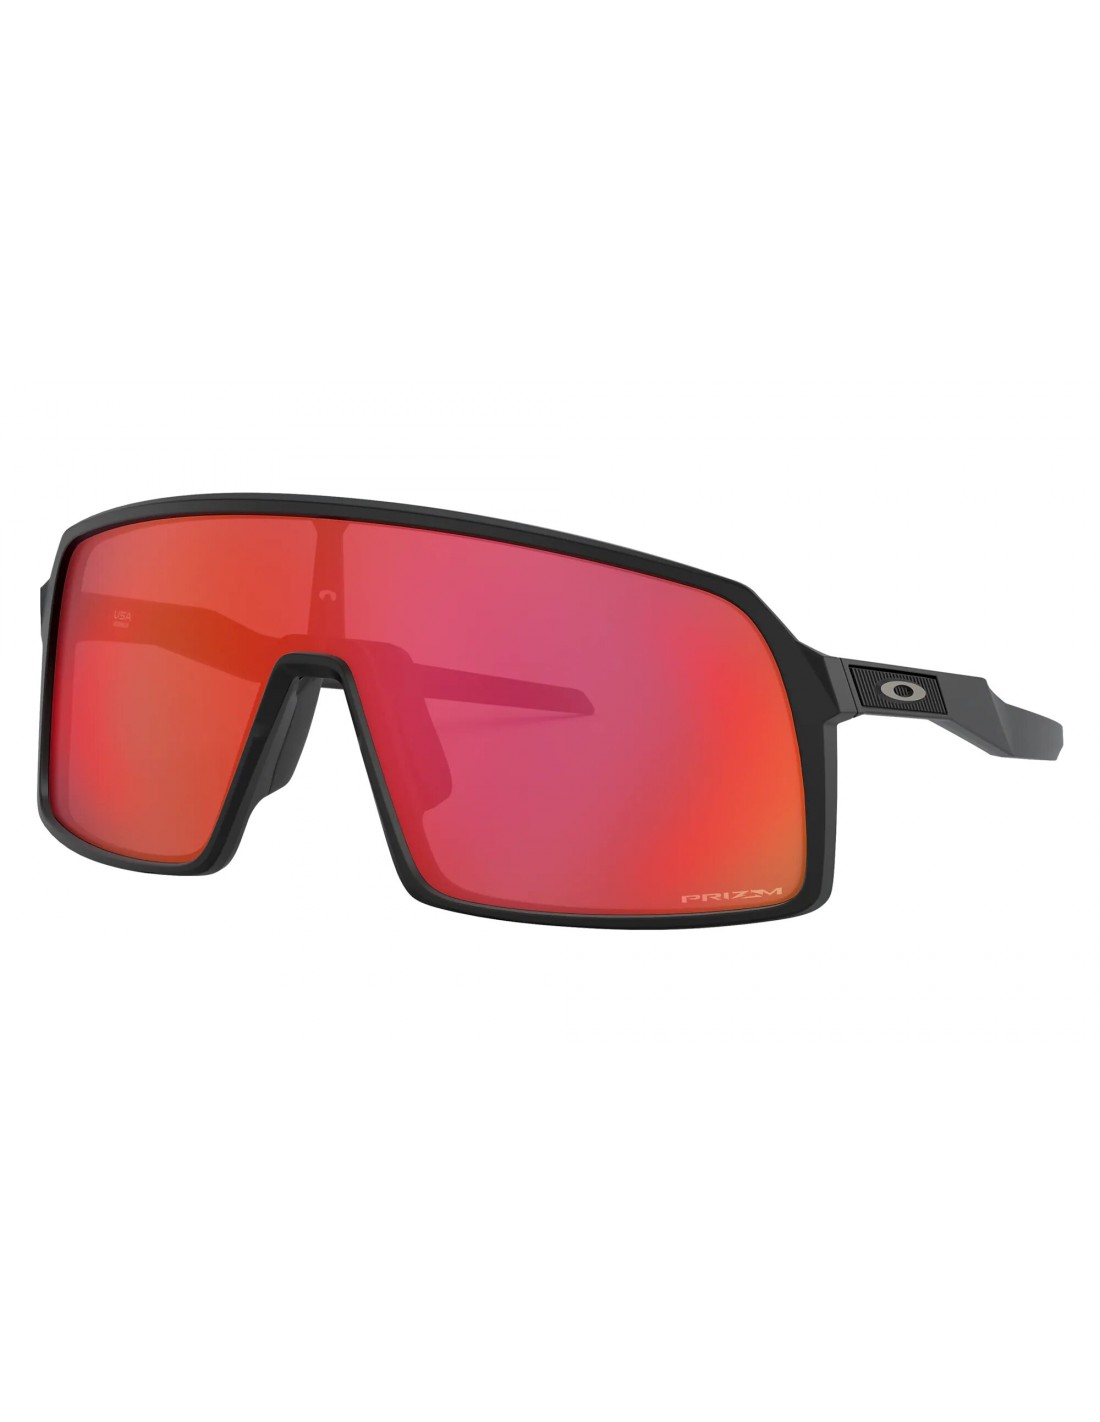 Oakley Sonnenbrille - Sutro - Matte Black - Prizm Trail Torch Brillenfassung - Sportbrillen, von Oakley